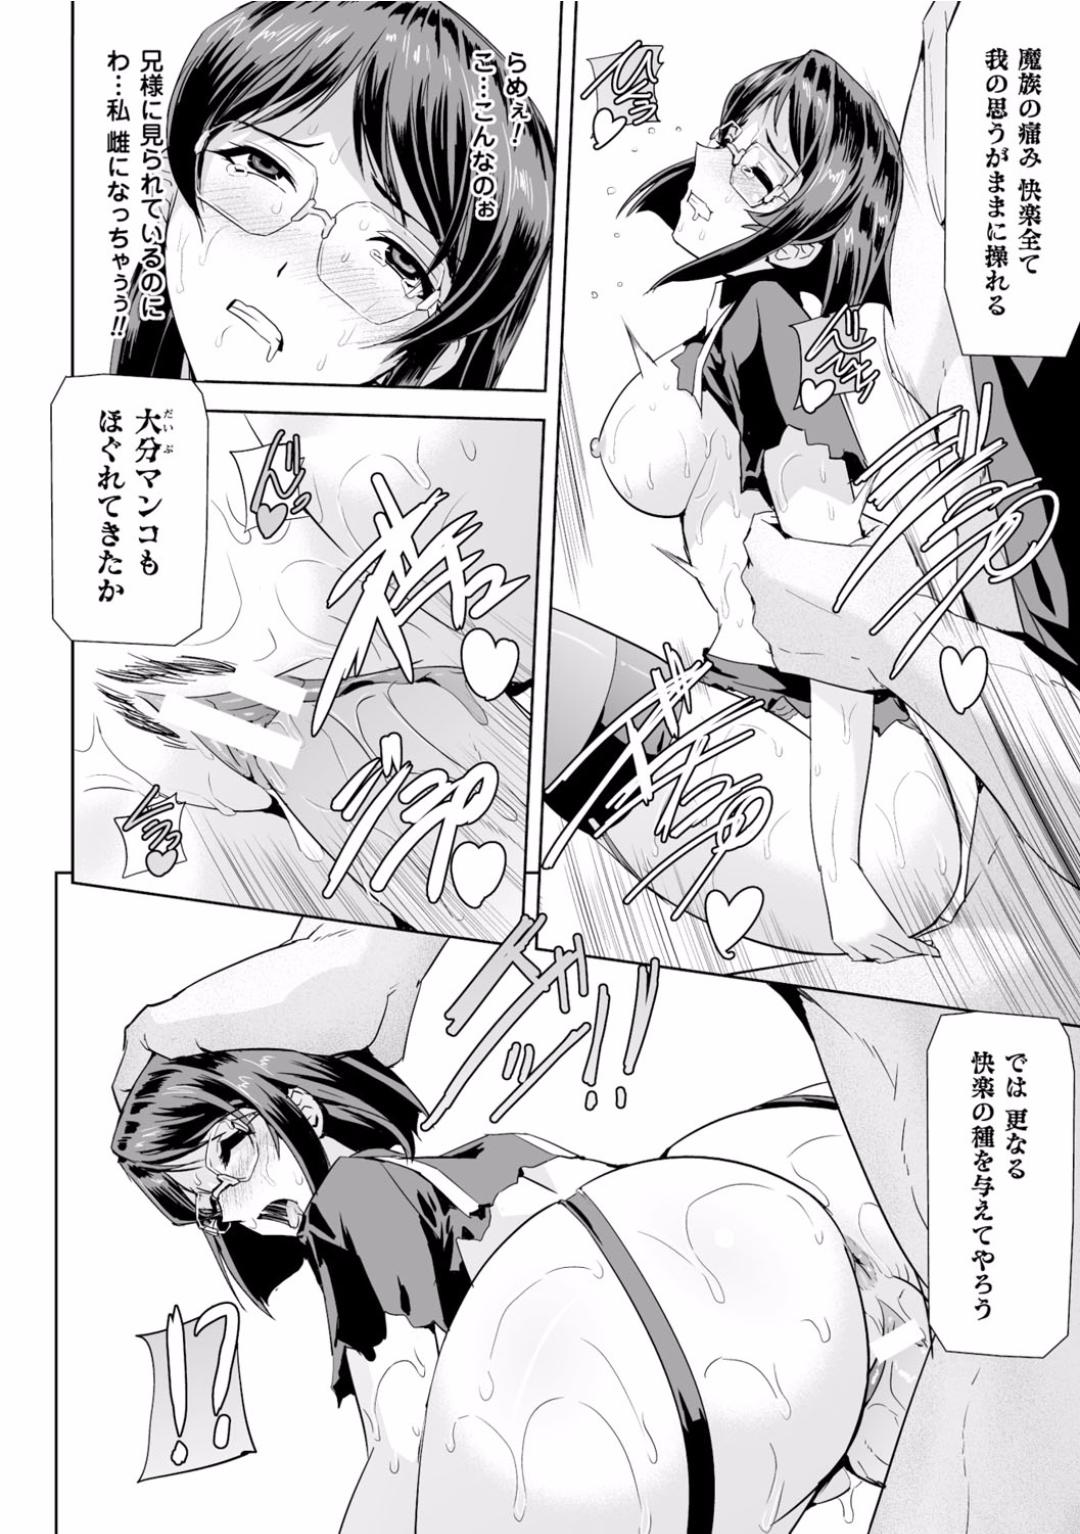 Seigi no Heroine Kangoku File Vol. 2 26